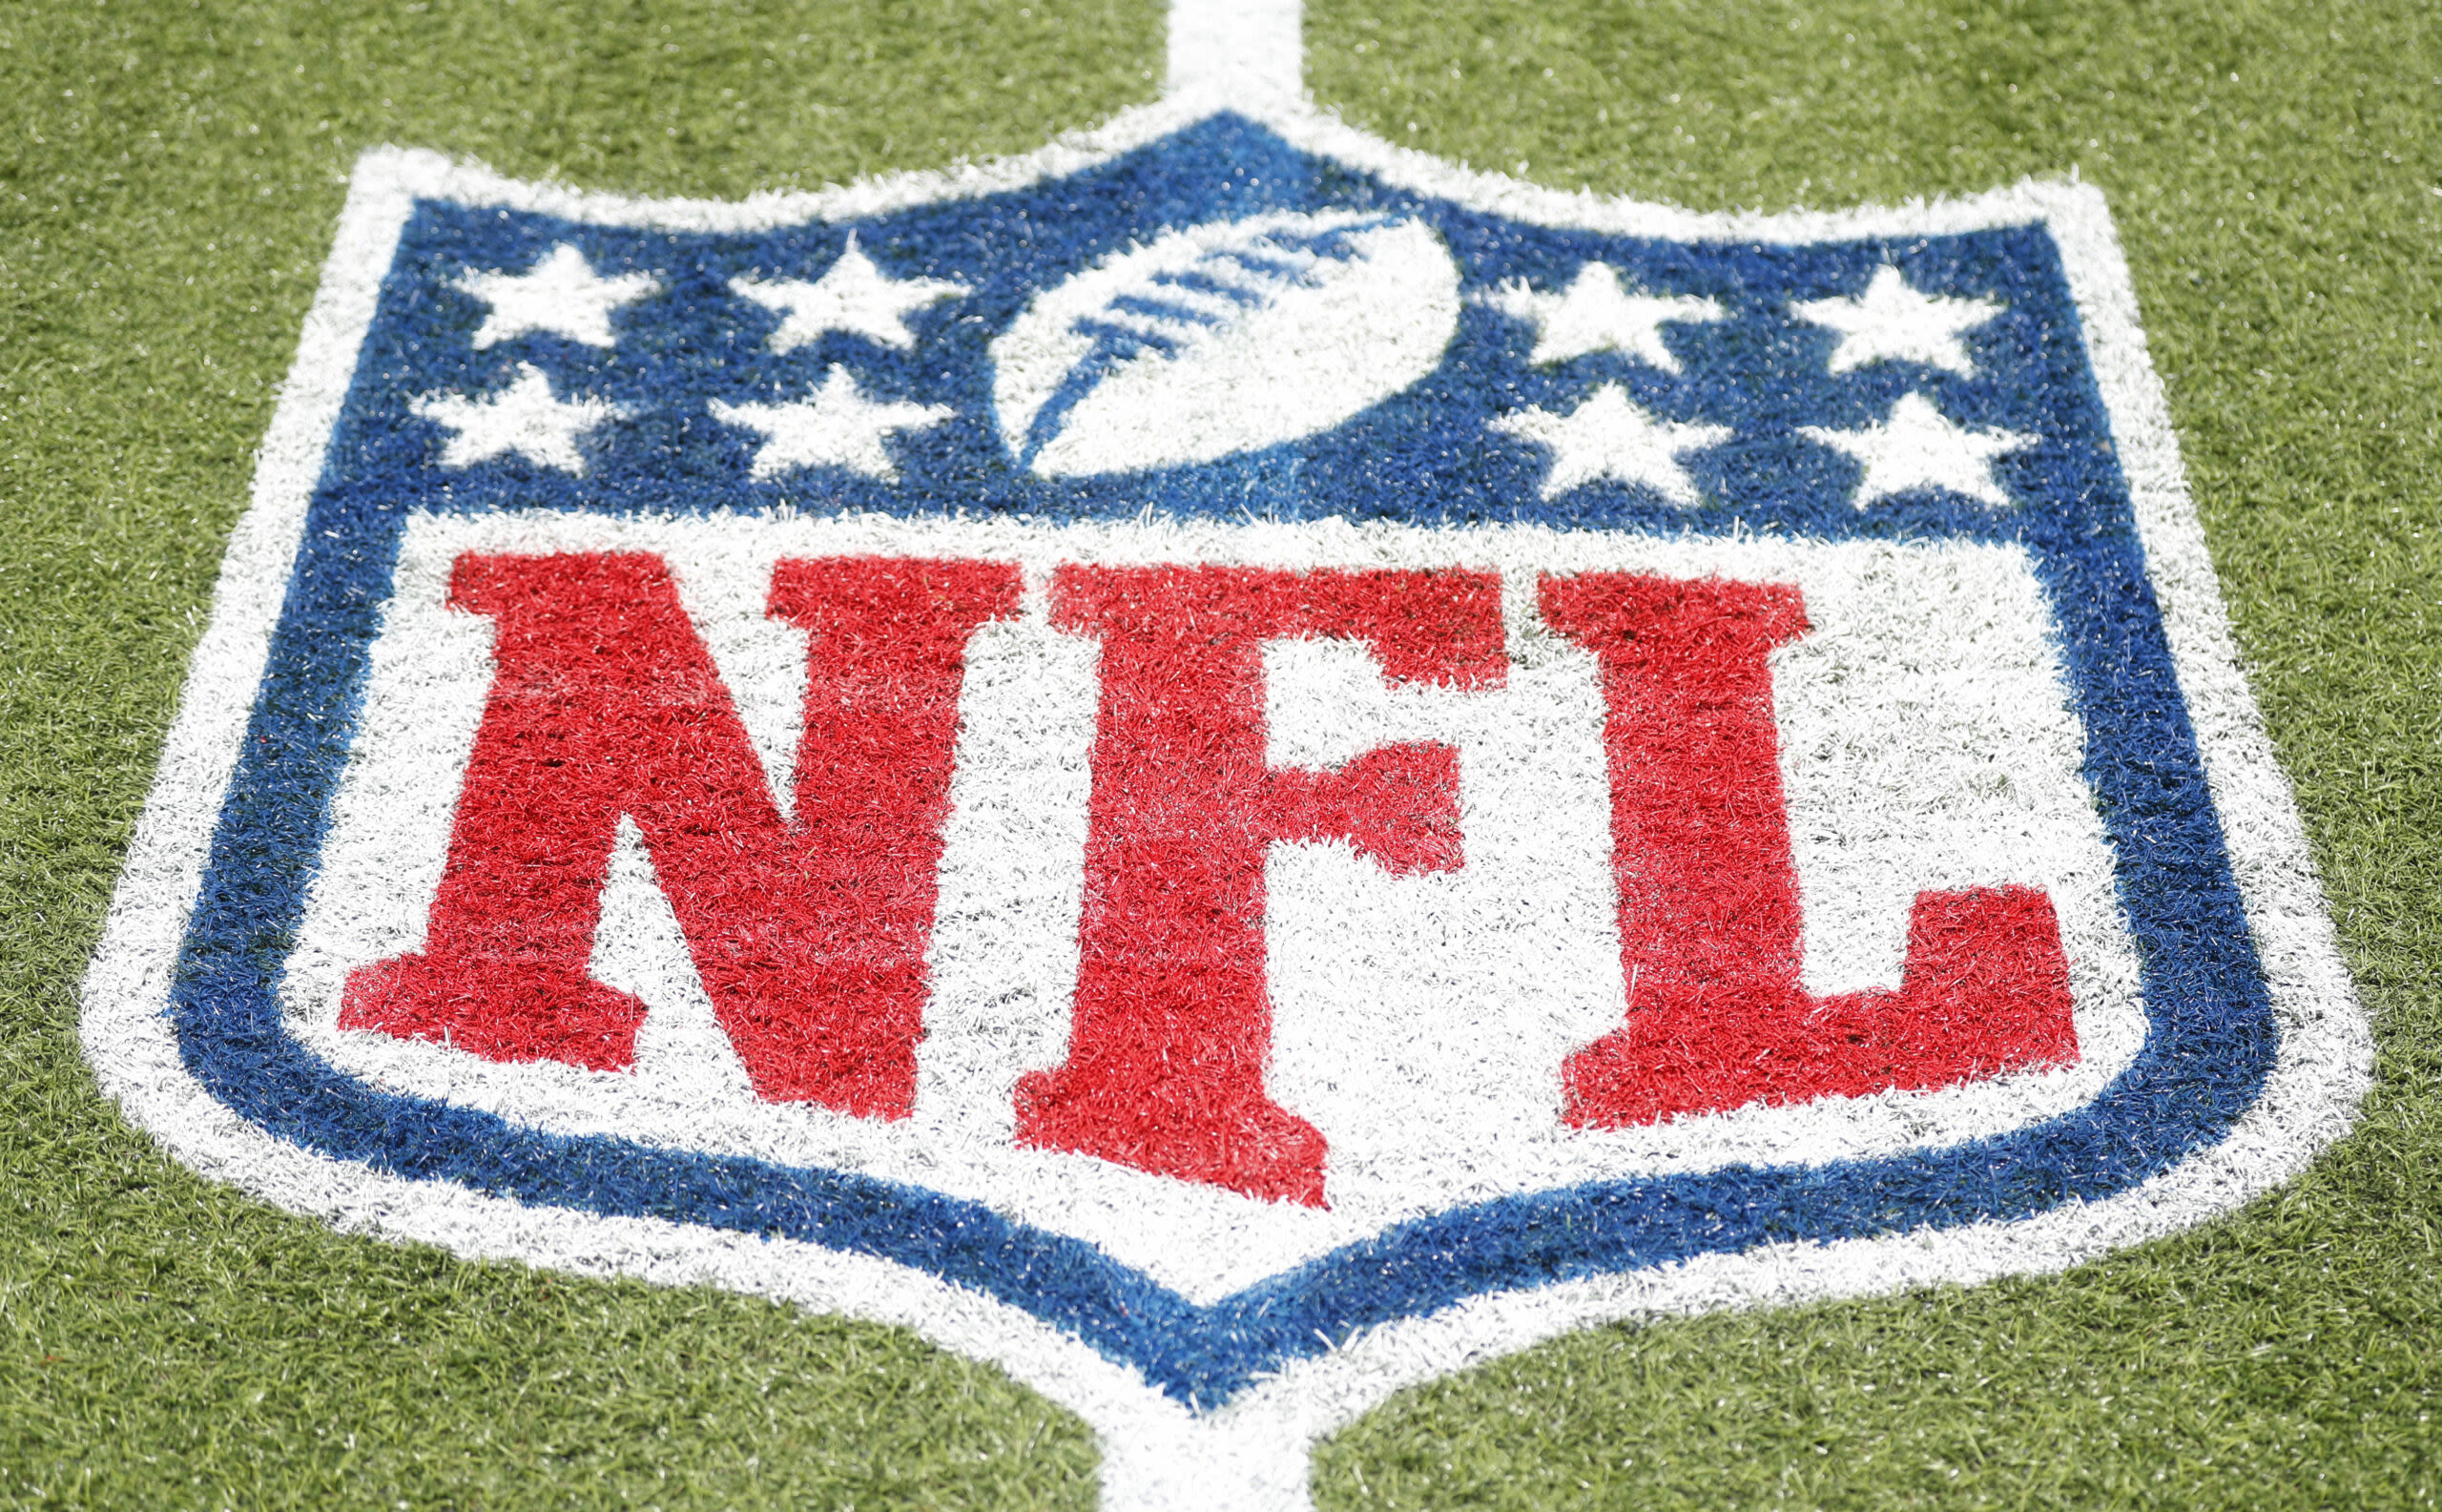 Judge overturns $4.7 billion verdict in NFL Sunday Ticket case